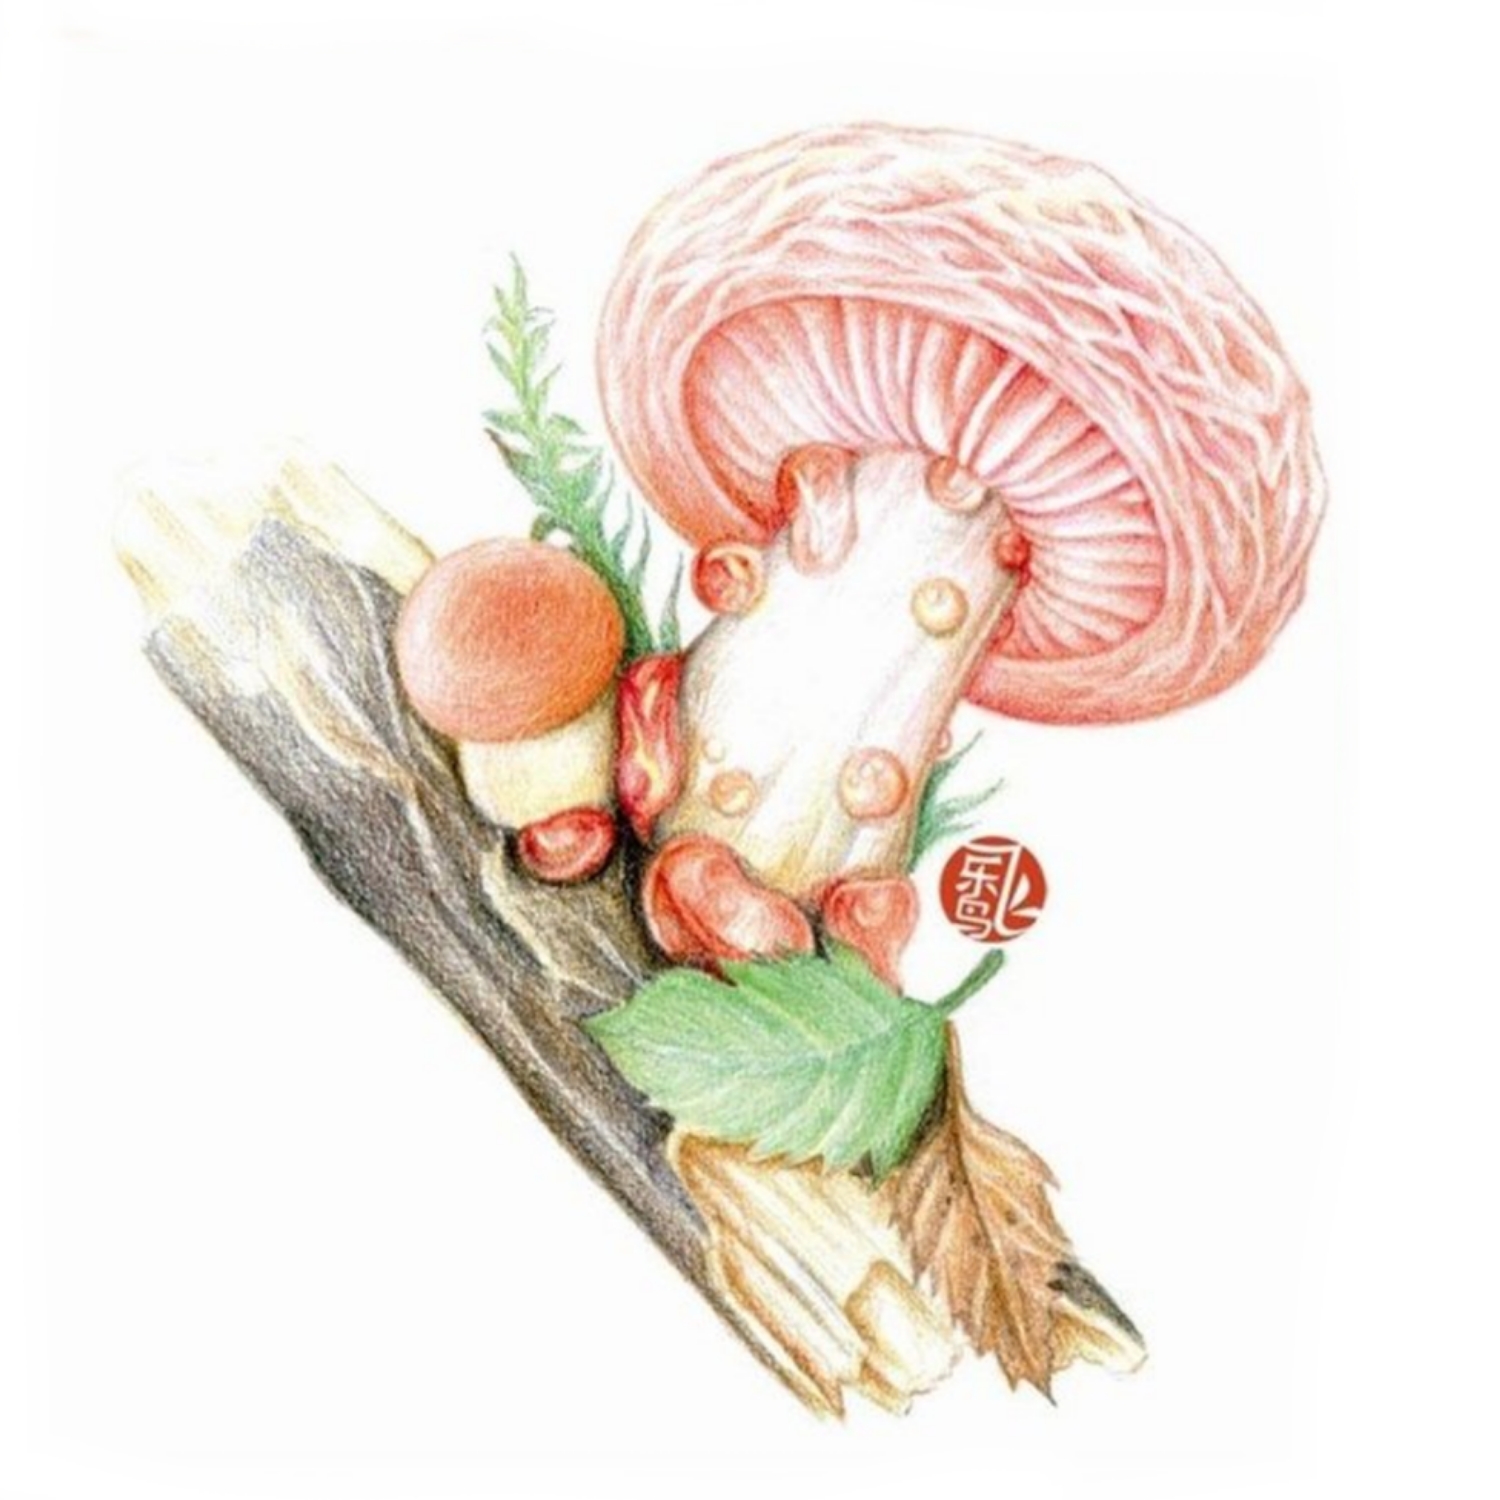 彩铅手绘(蘑菇)